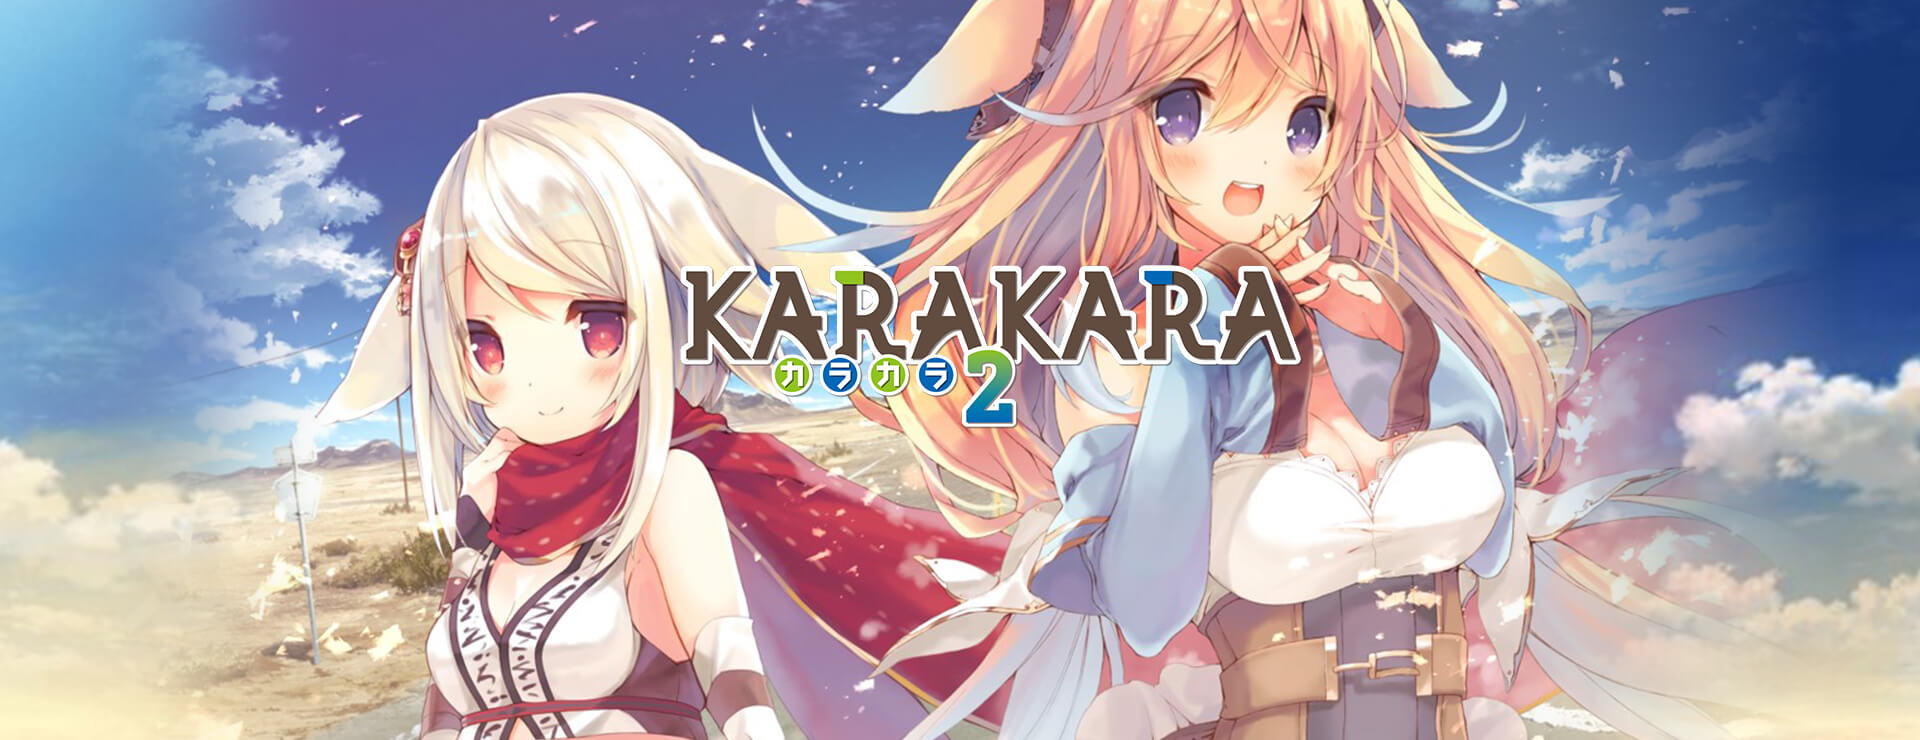 KARAKARA2 - Visual Novel Game